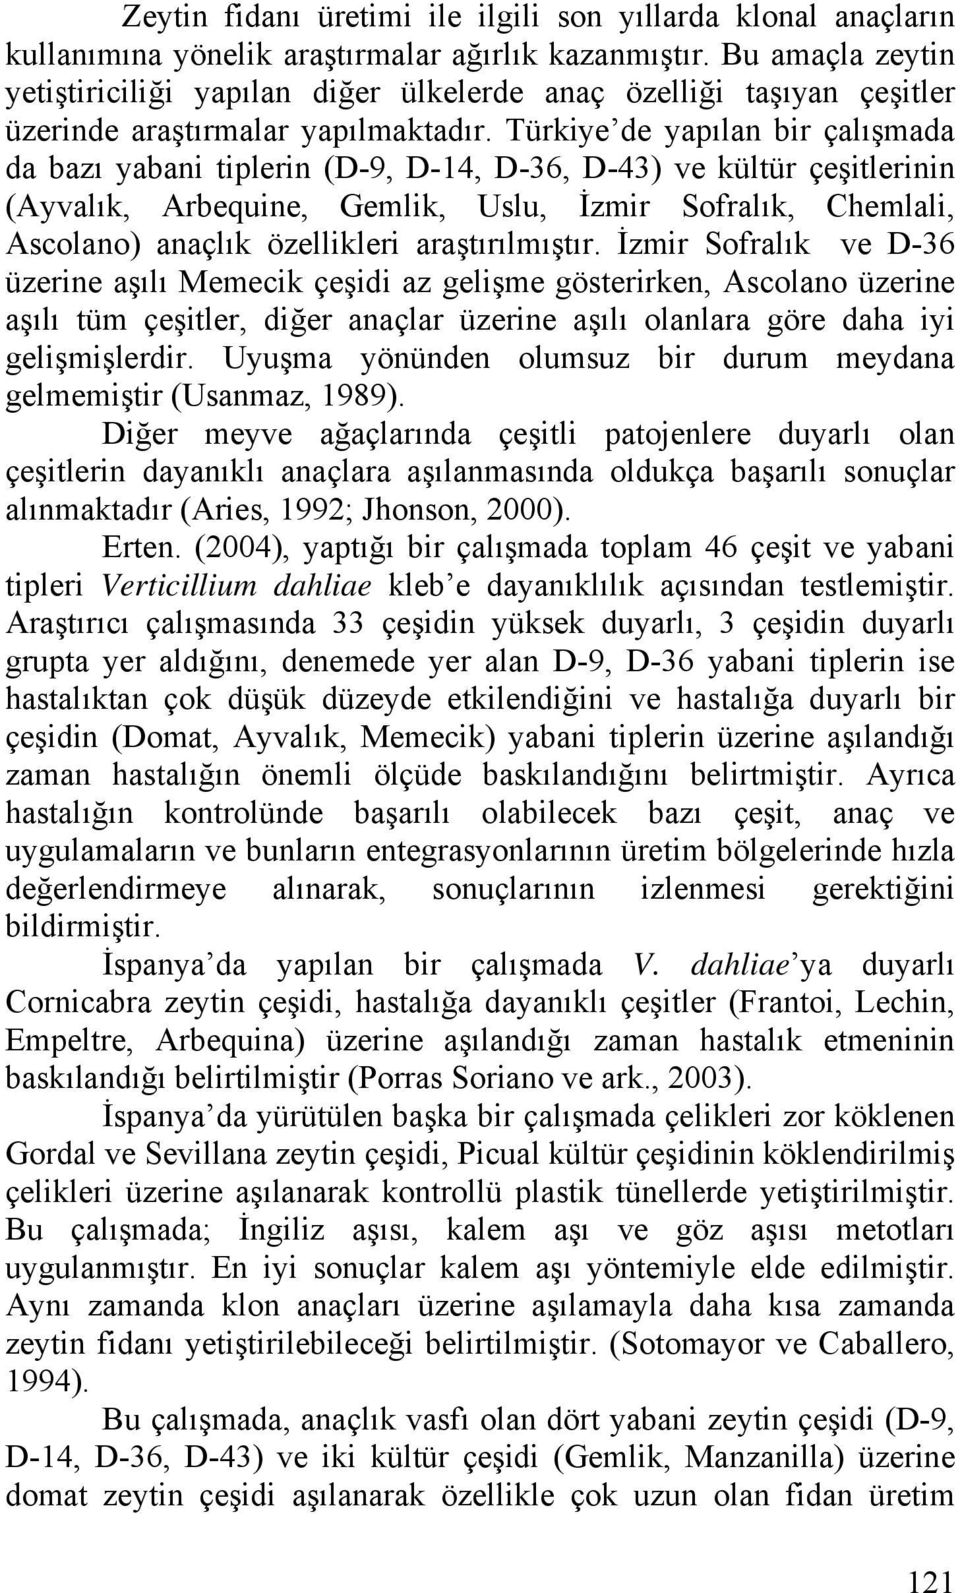 Türkiye de yapılan bir çalışmada da bazı yabani tiplerin (D-9, D-14, D-36, D-43) ve kültür çeşitlerinin (Ayvalık, Arbequine, Gemlik, Uslu, İzmir Sofralık, Chemlali, Ascolano) anaçlık özellikleri